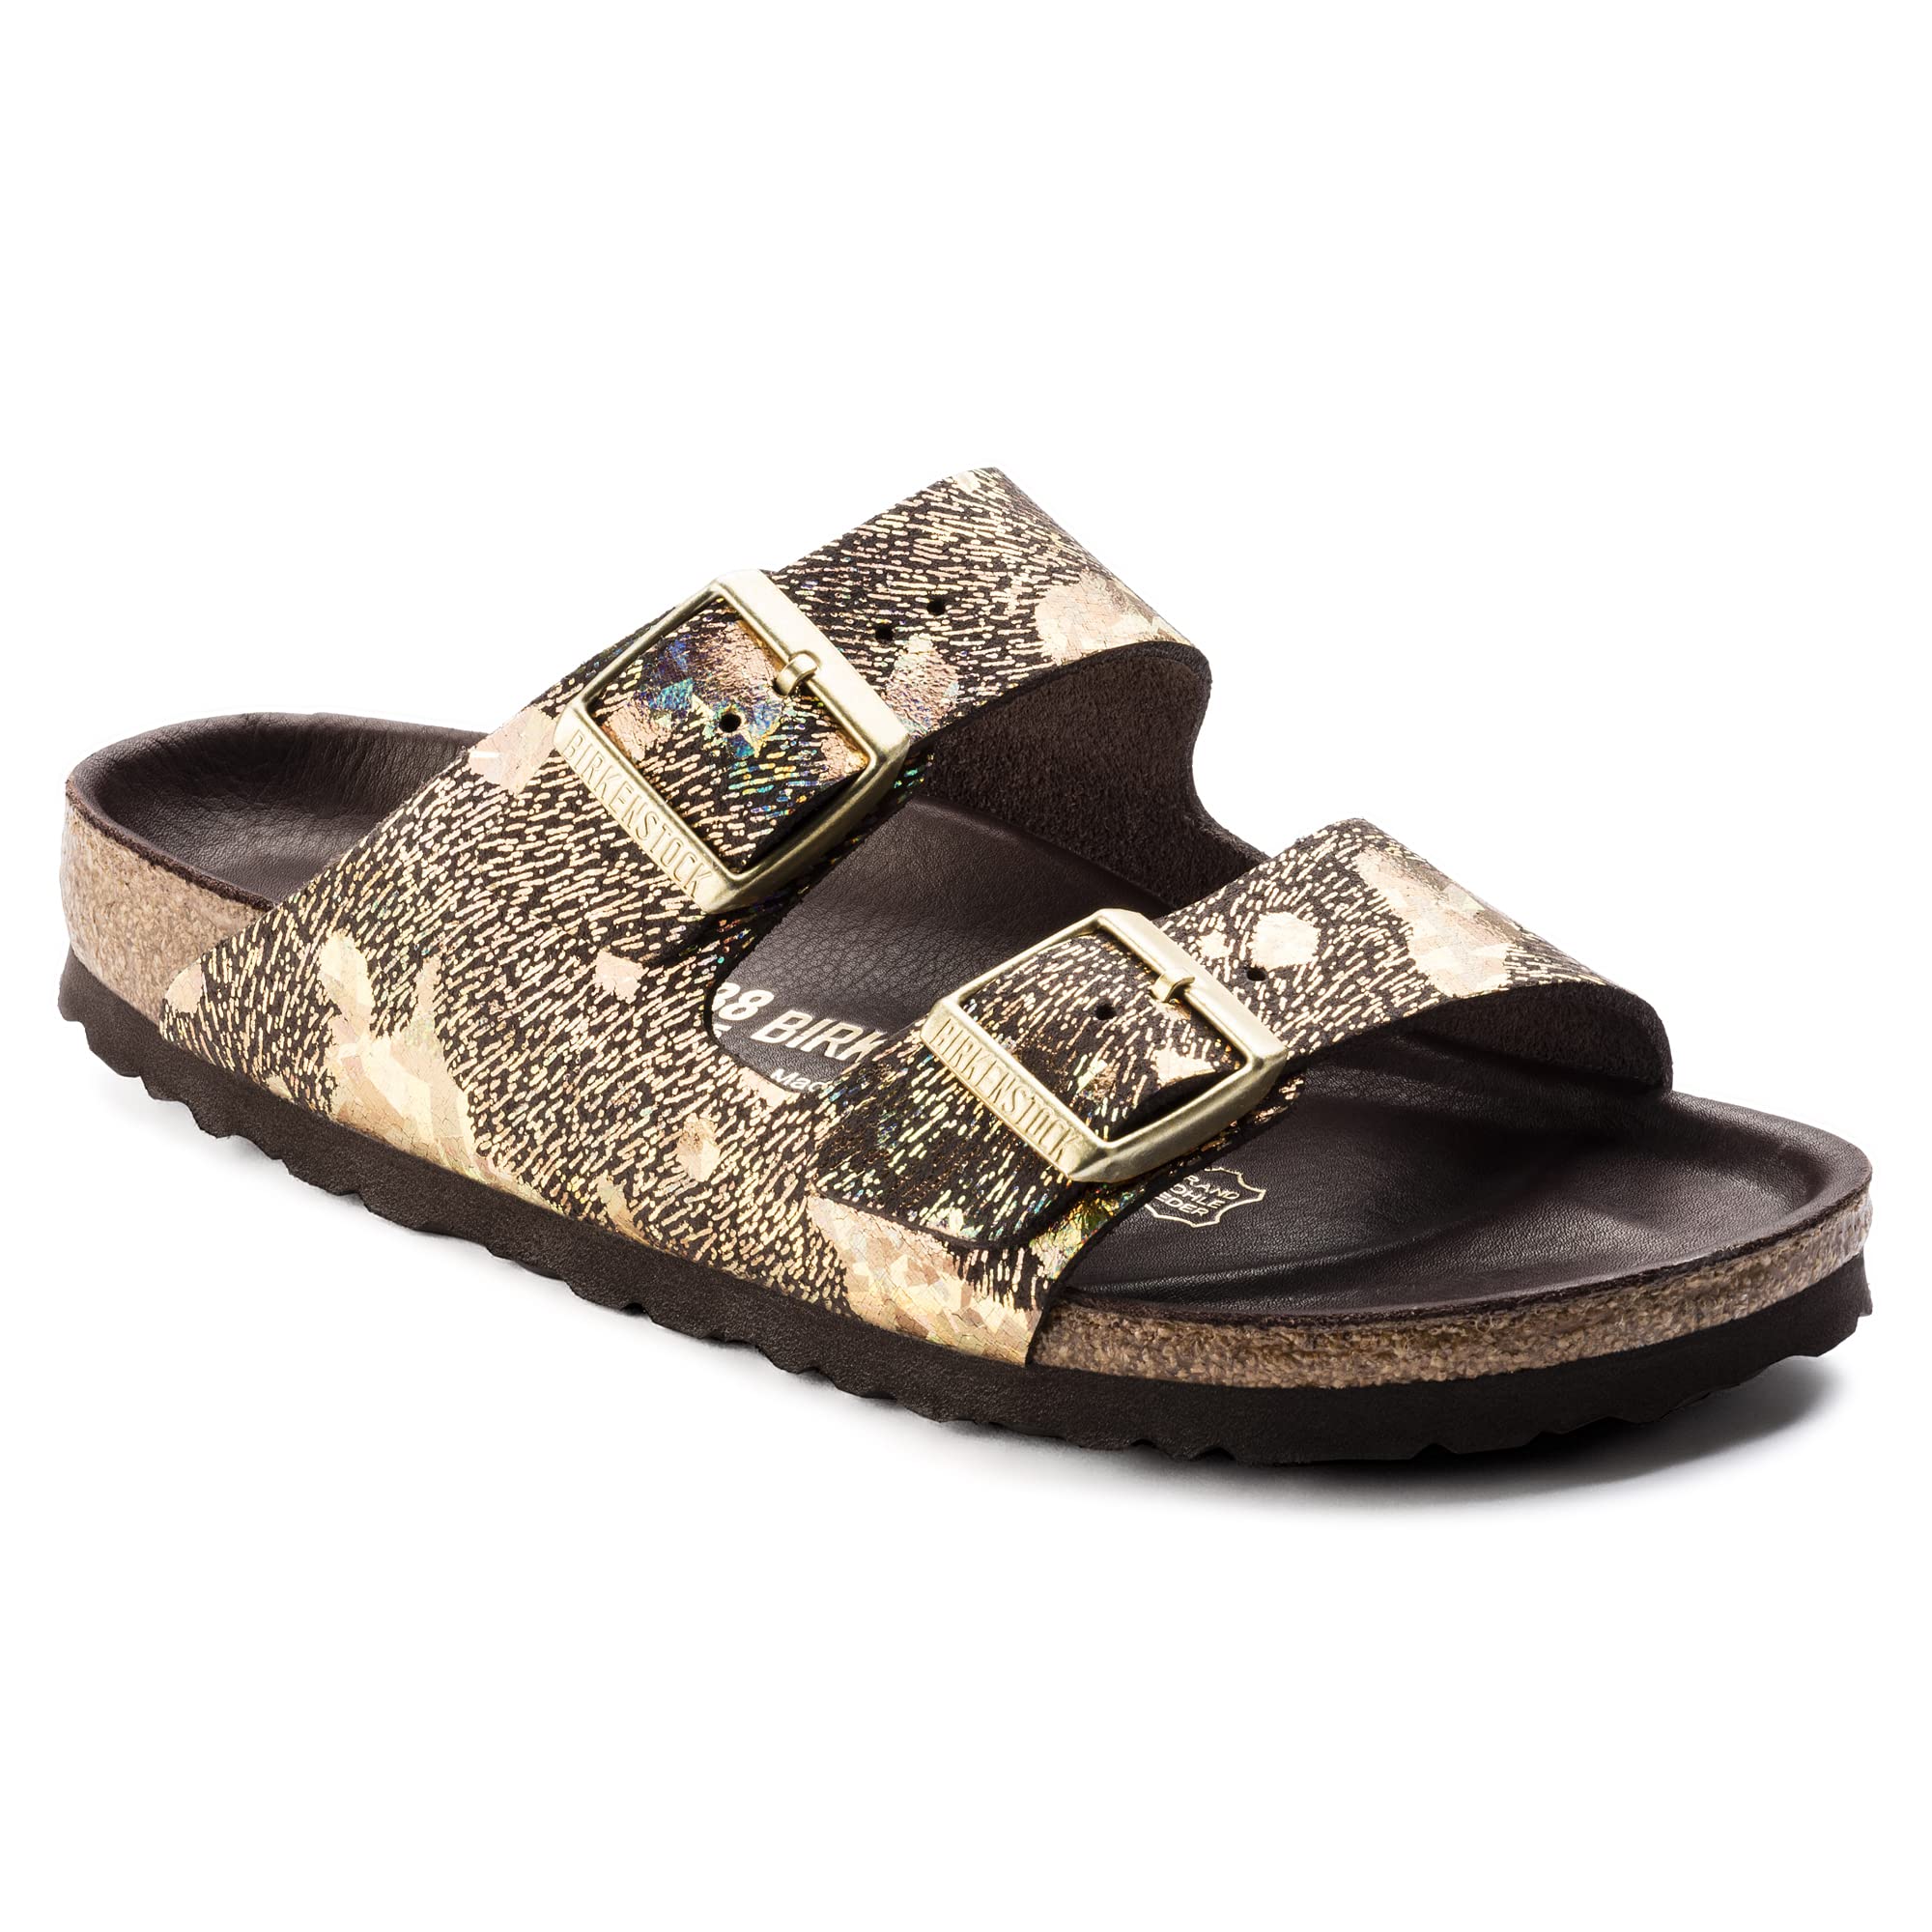 Birkenstock Women's Arizona Sandals, HEX NL Spotted Metallic Brown, 4-4.5